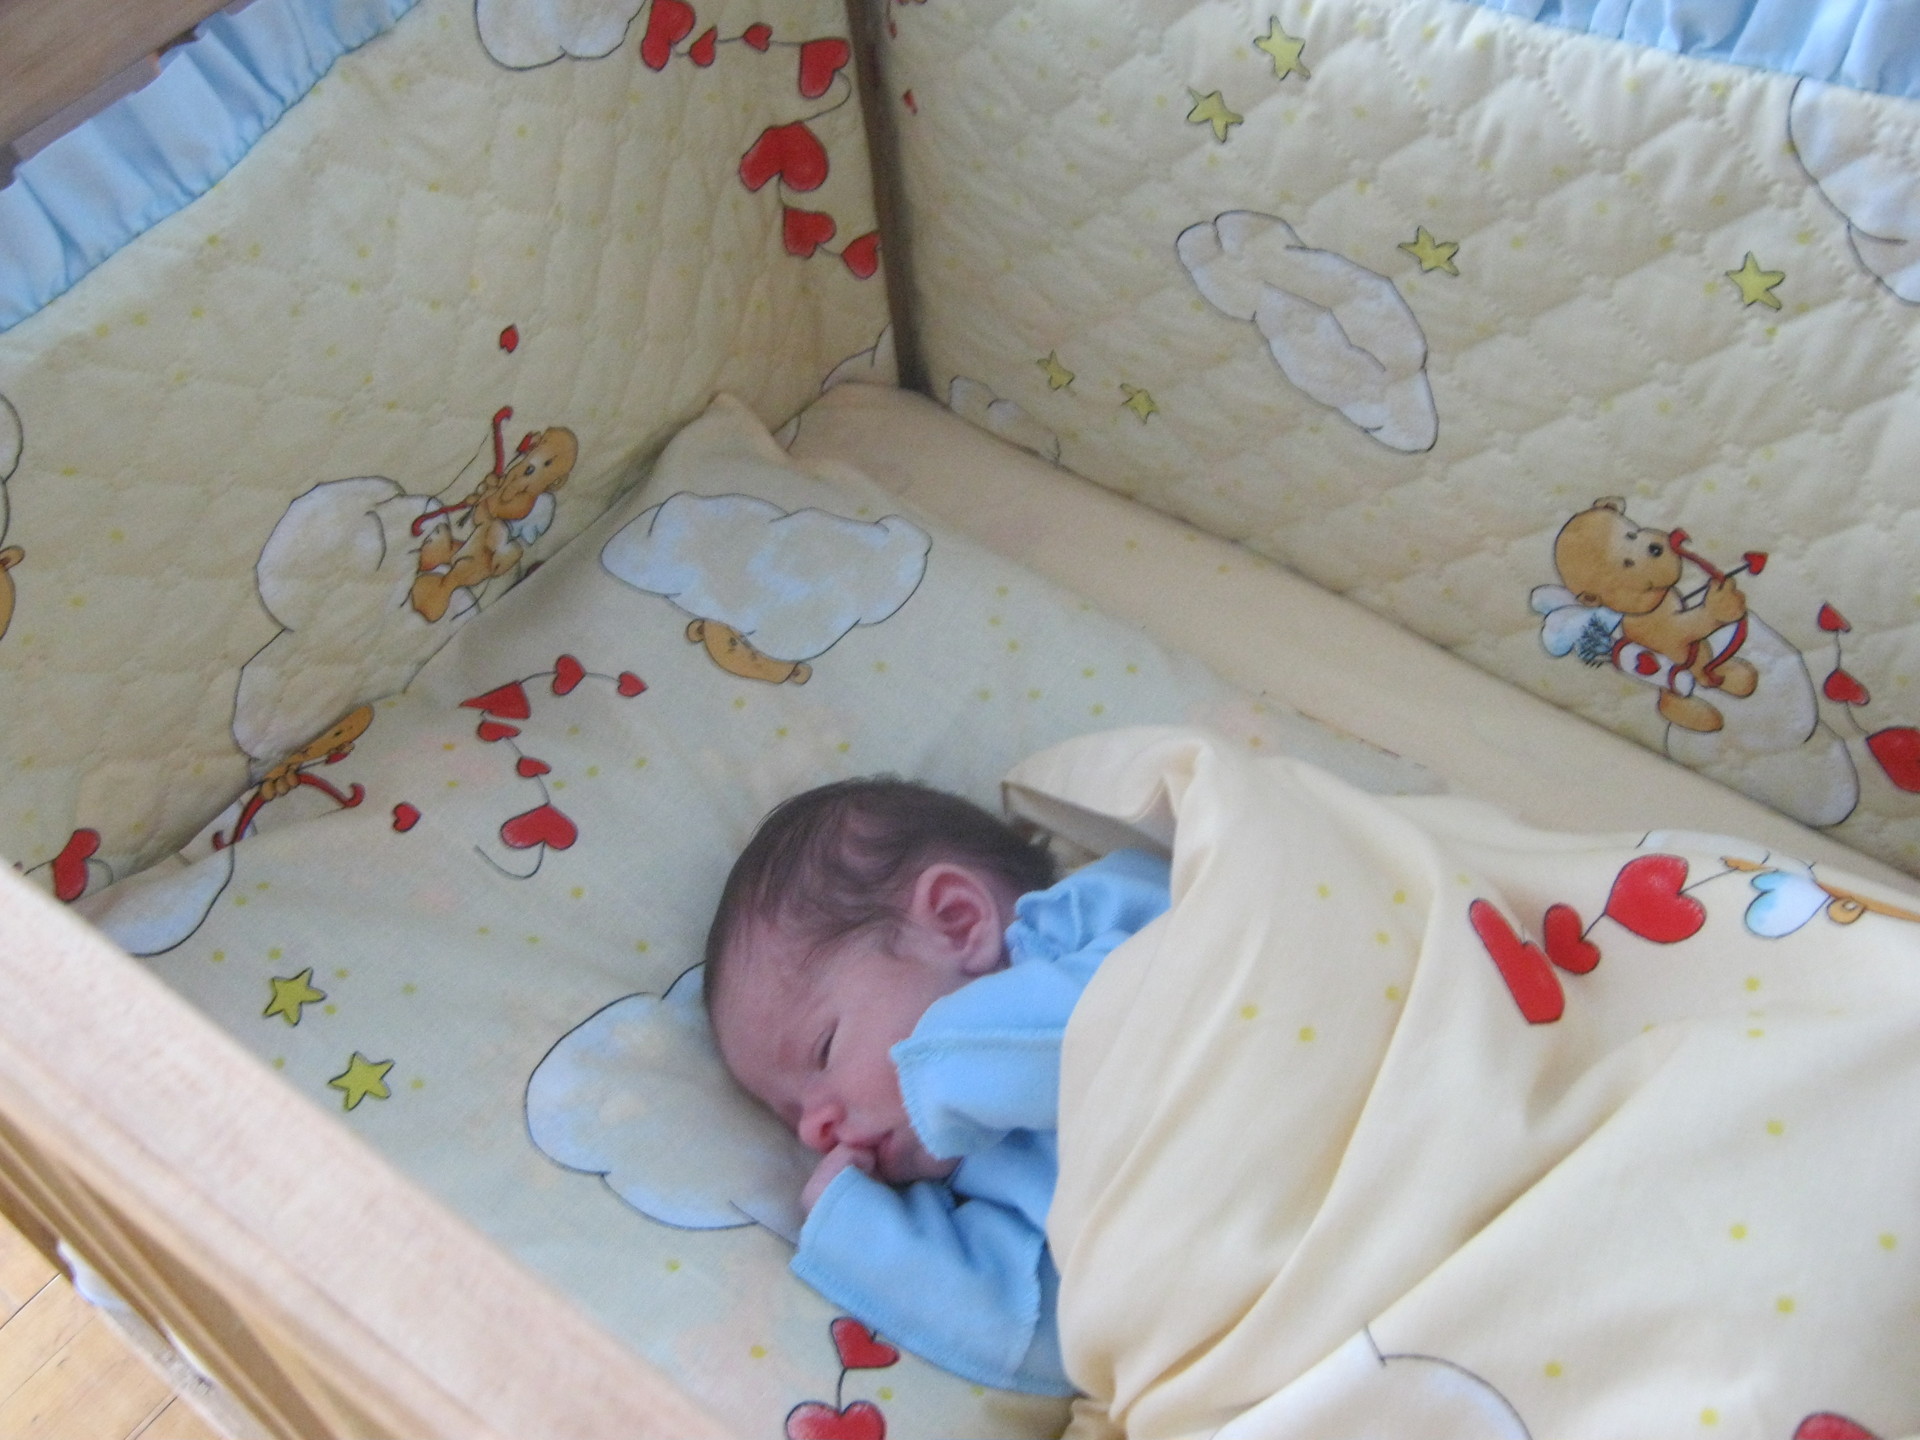 Месячные как спать ночью. Кроватка для новорожденного. Грудной ребёнок в кровптке. Грудные дети в кроватке. Новорожденный ребенок в кроватке.